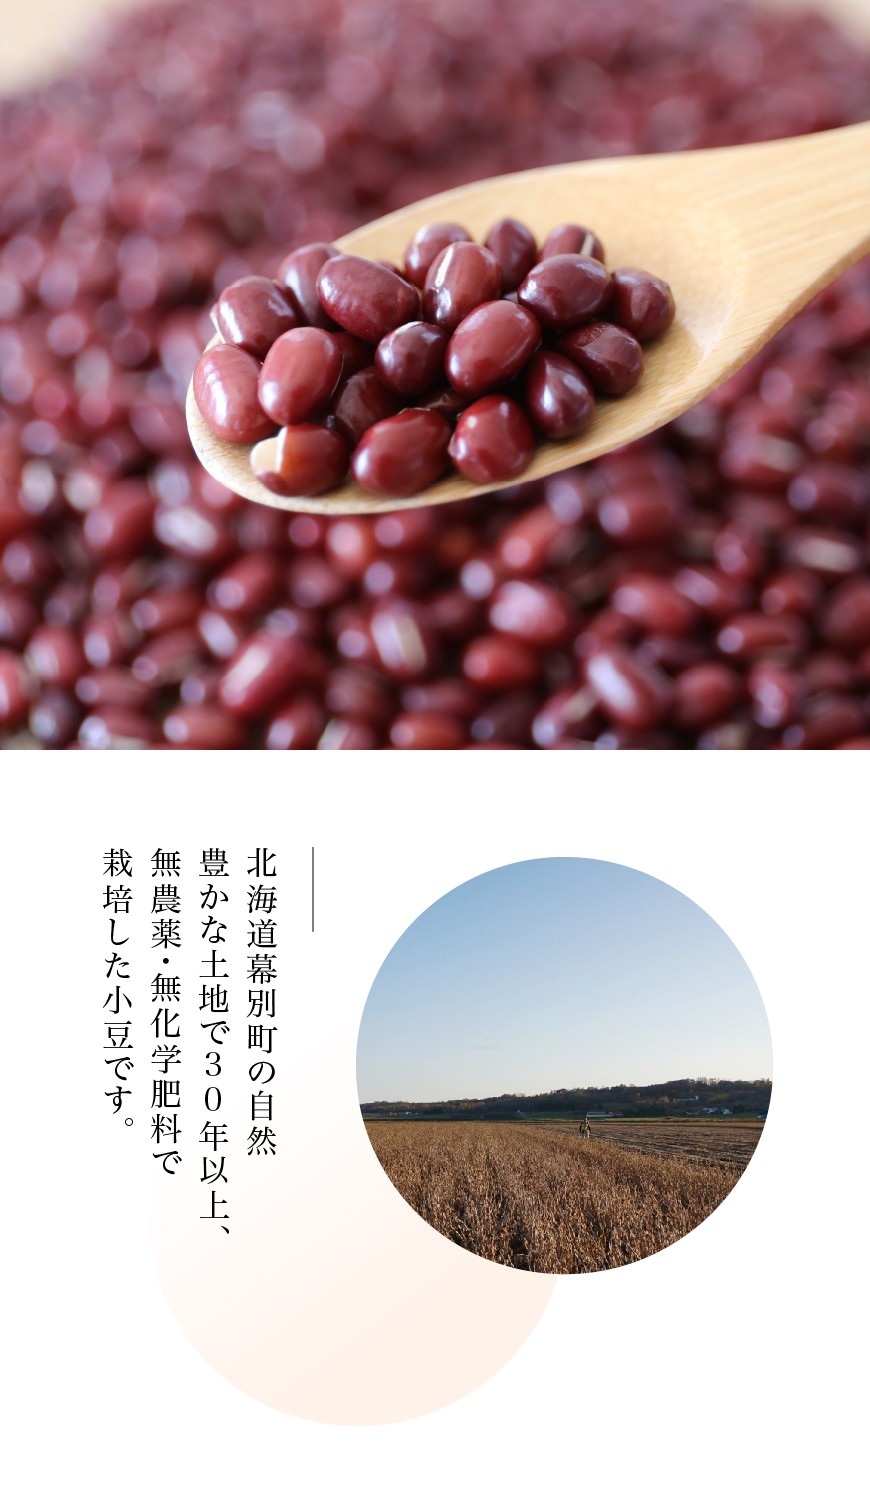 無農薬小豆「えりも小豆」30kg-北海道平譯農園-【送料無料】